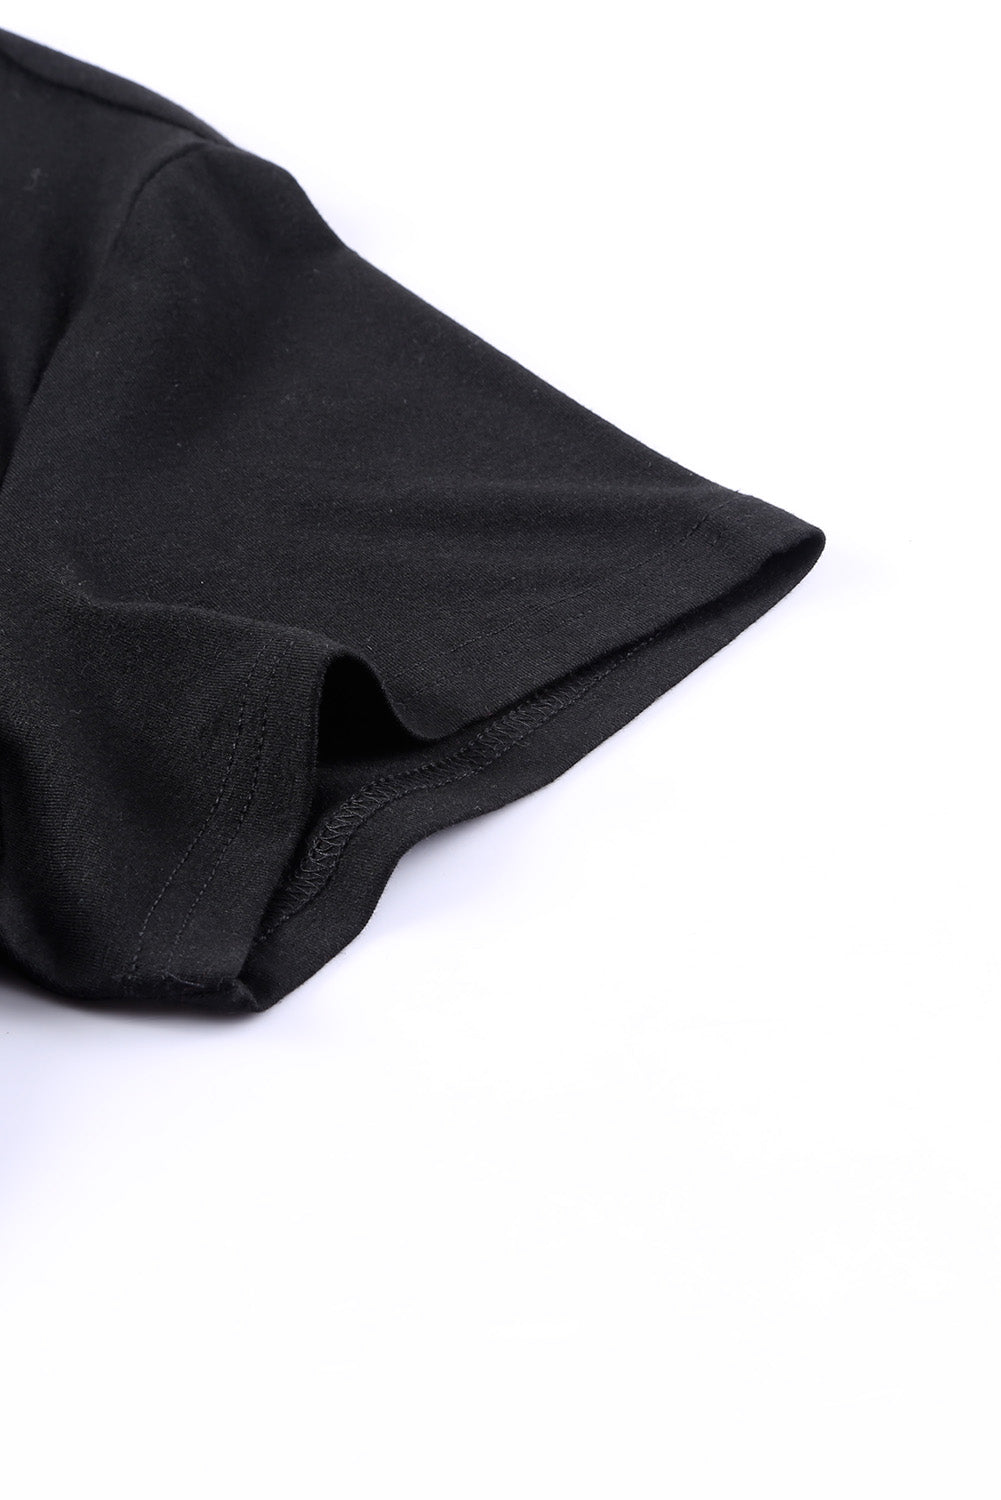 Majica veće veličine s crnim šljokicama s V izrezom i džepom na prsima